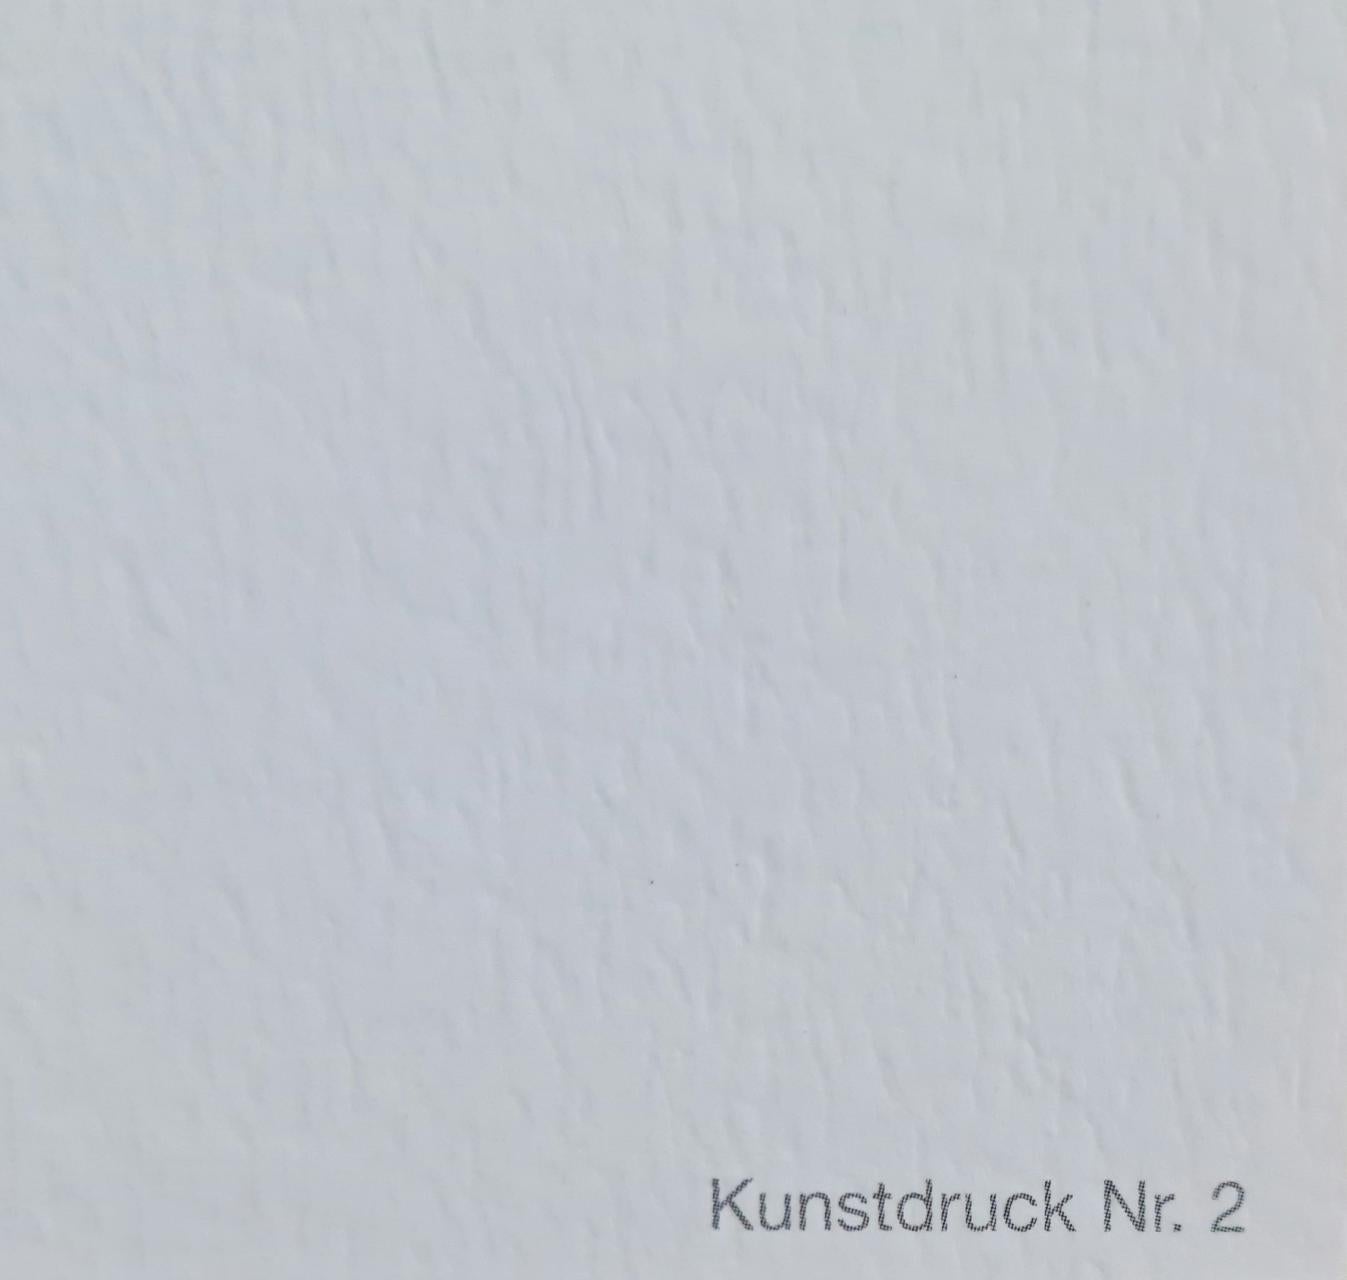 Künstler: Christo (1935 - 2020)
Titel: Eingewickelte Bäume Vertikal
Größe: 31